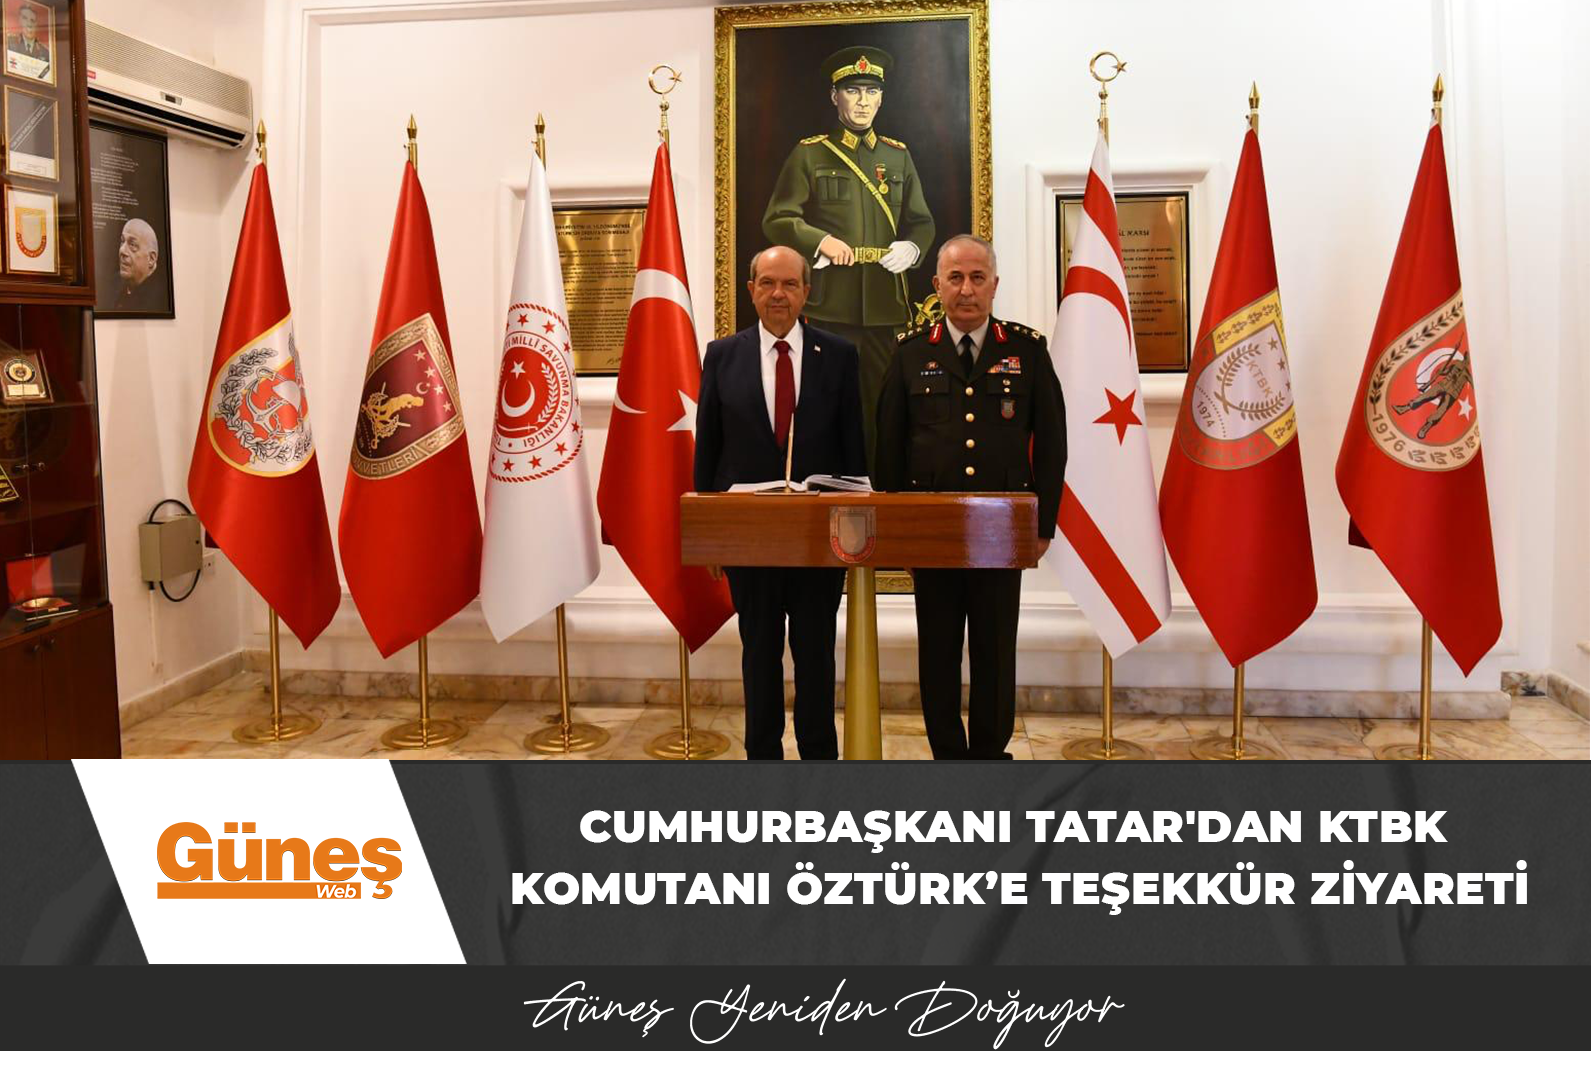 Cumhurbaşkanı Tatar’dan KTBK Komutanı Öztürk’e teşekkür ziyareti